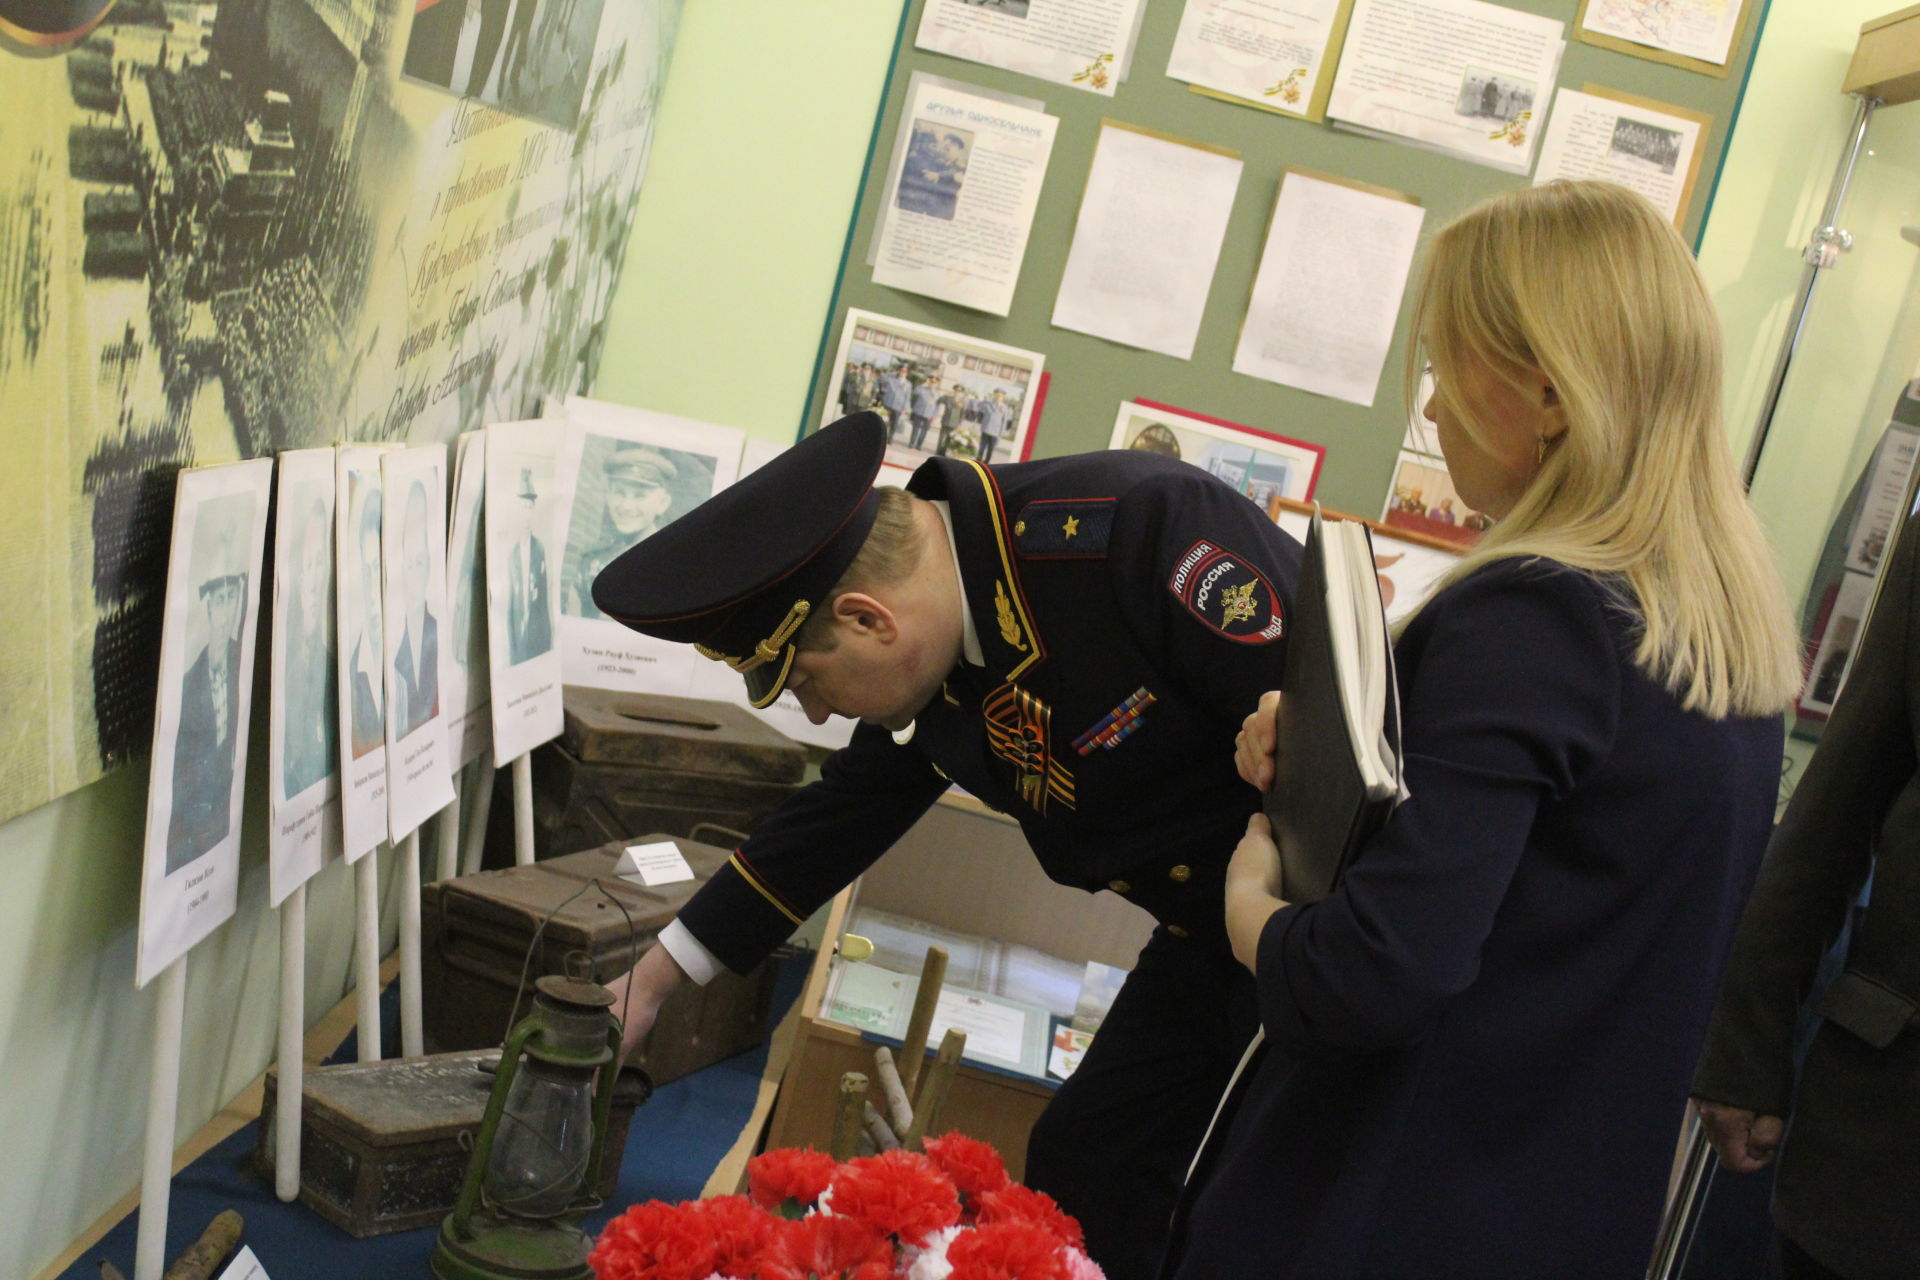 Замглавы МВД Татарстана возложил цветы к могиле Героя СССР Сабира Ахтямова